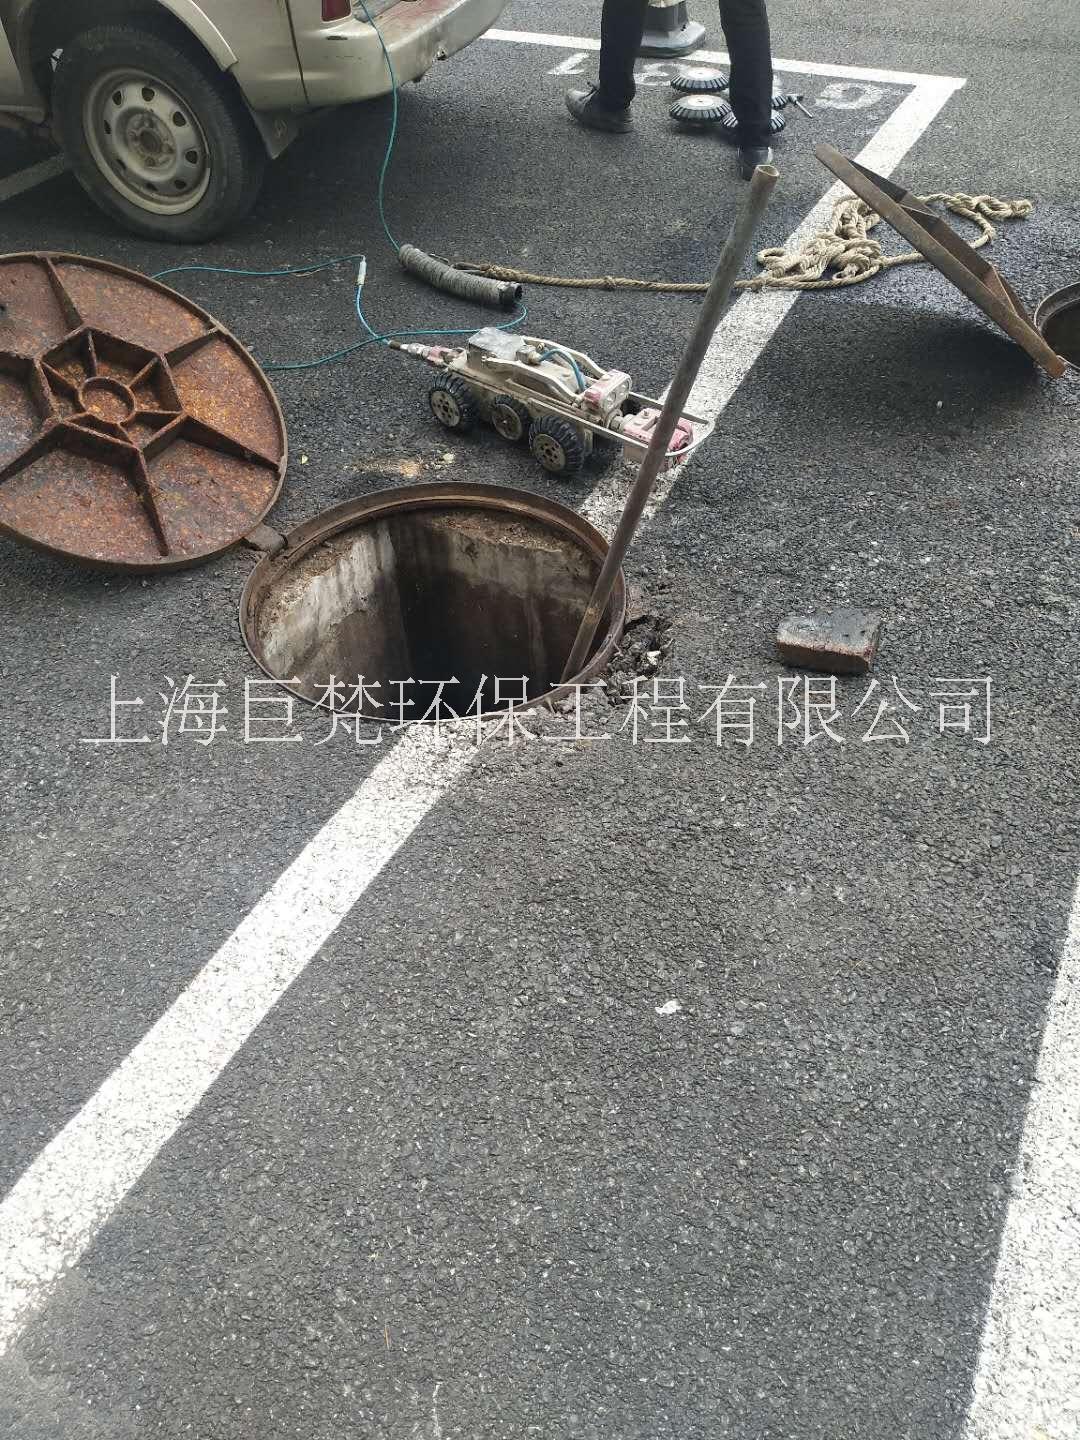 上海青浦雨污管道cctv检测 上海青浦下水管道影像检测 上海管道机器人检测图片